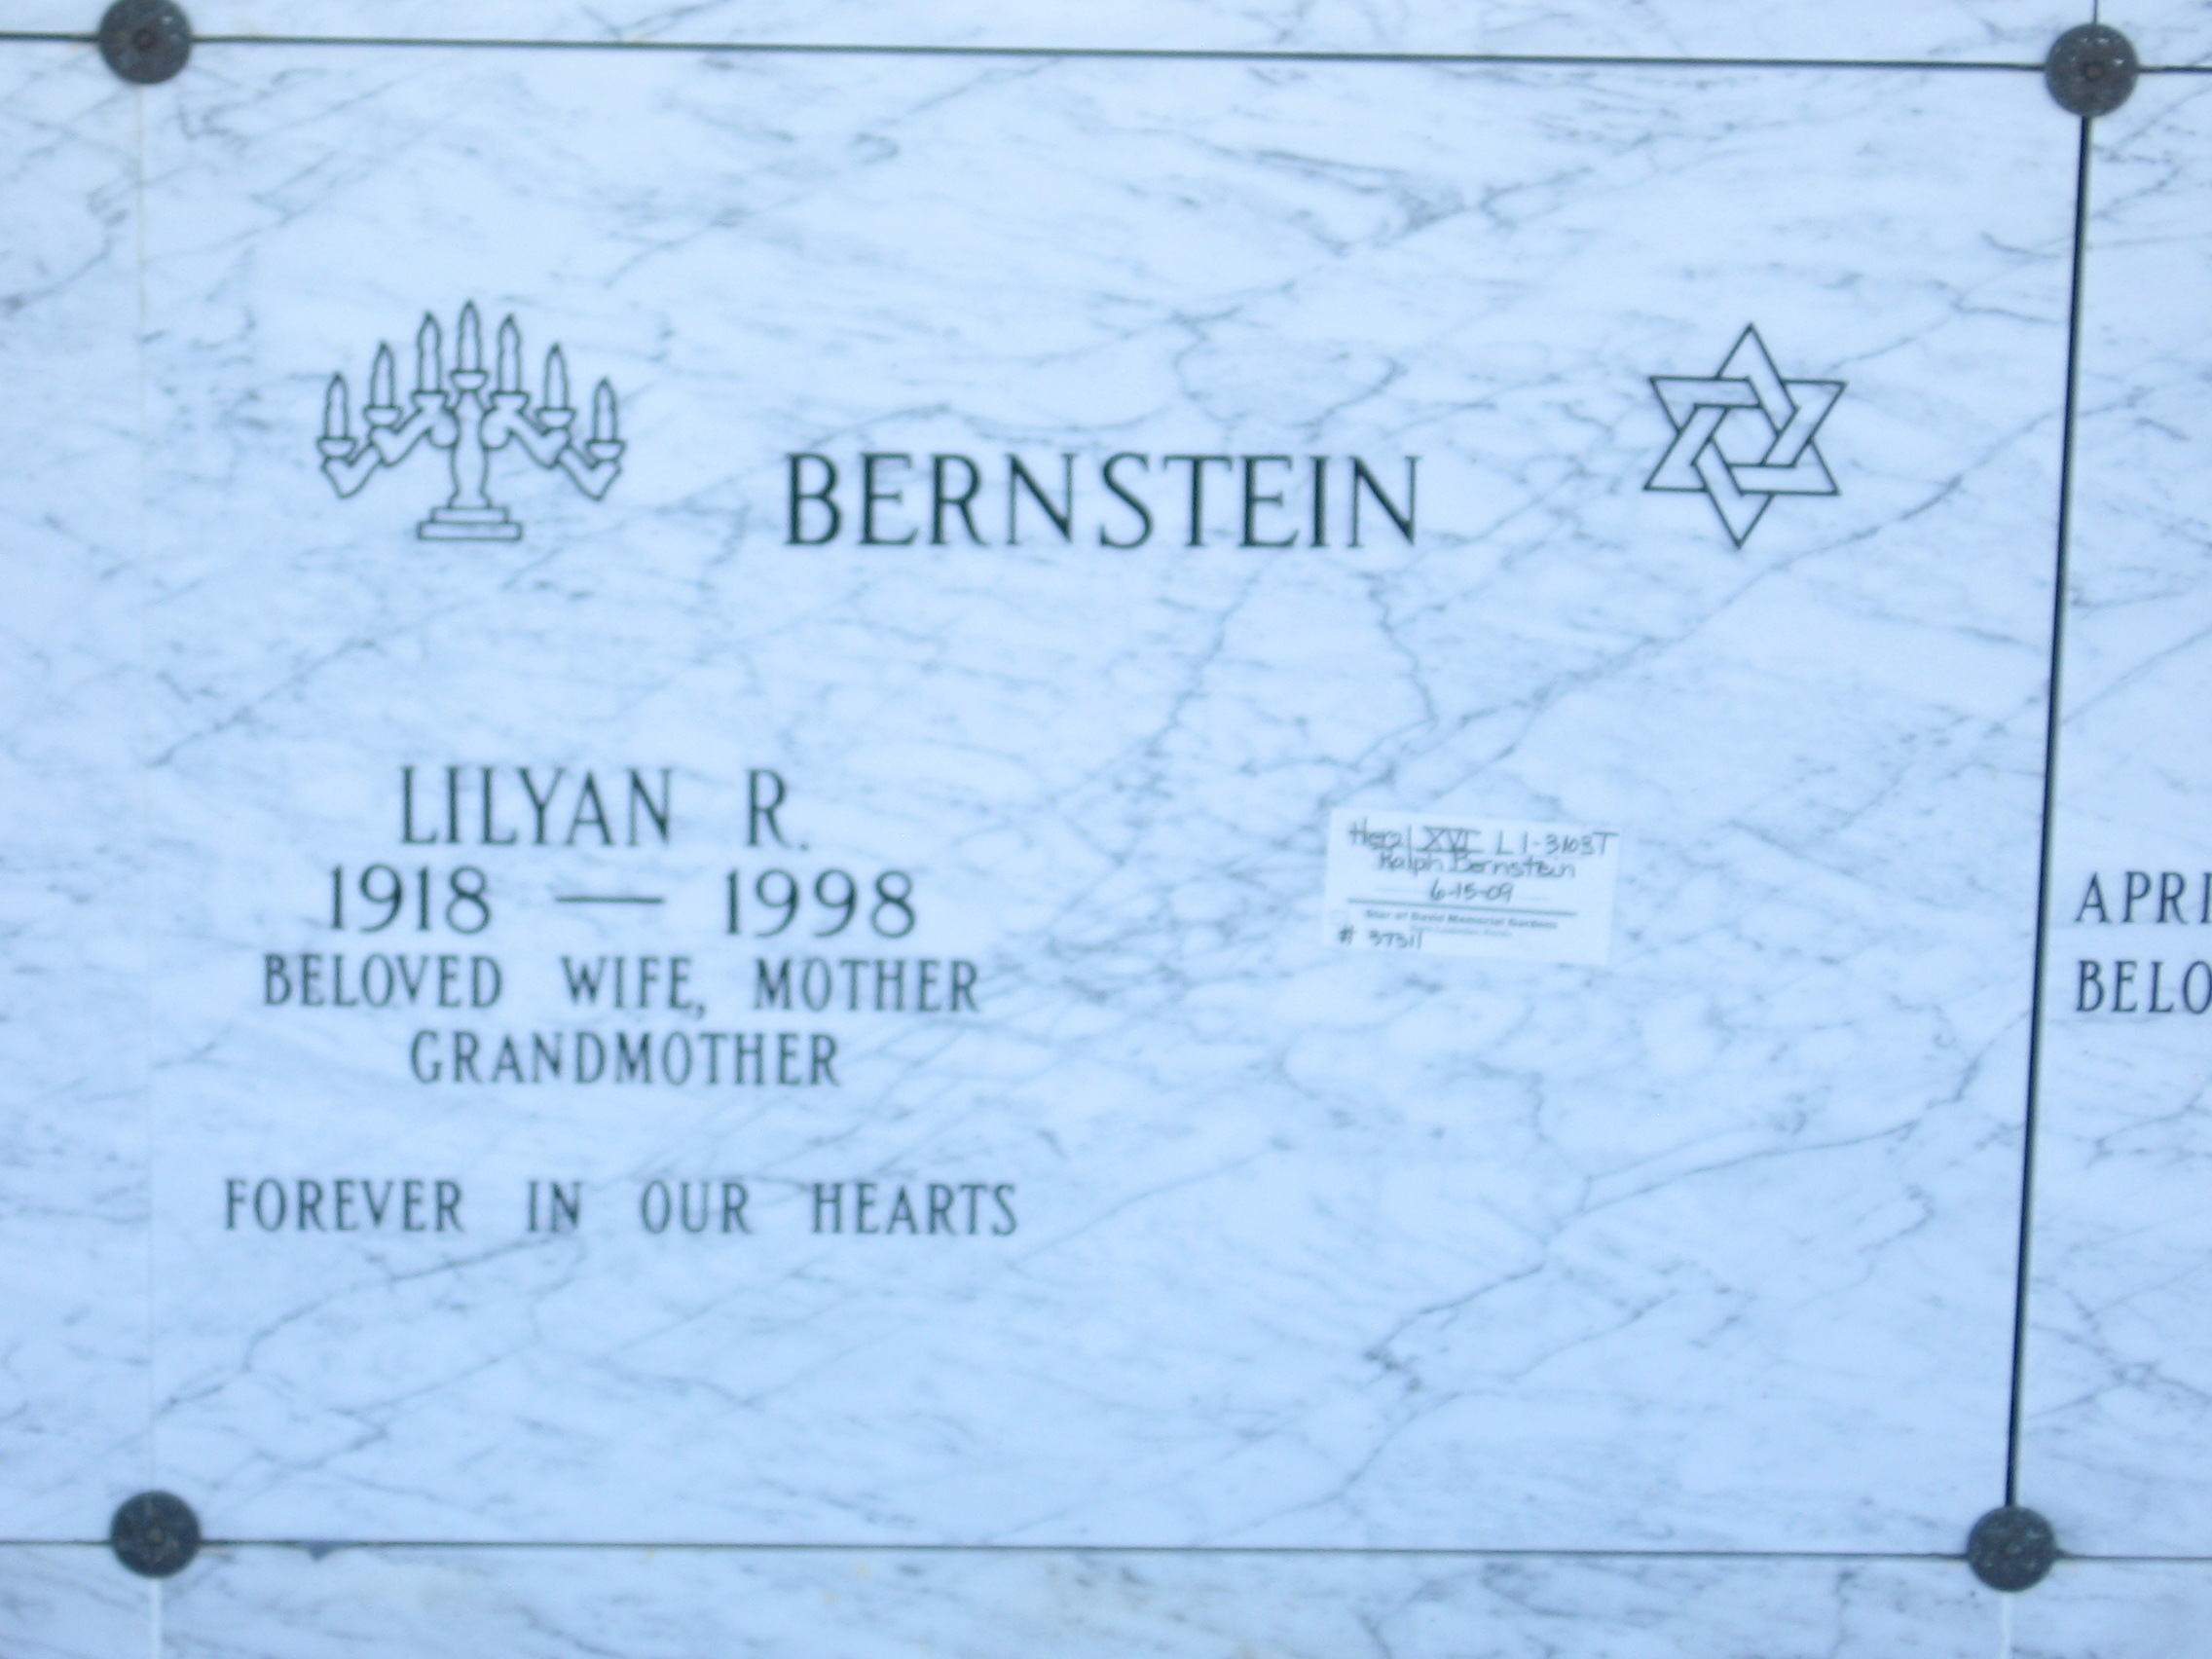 Lilyan R Bernstein